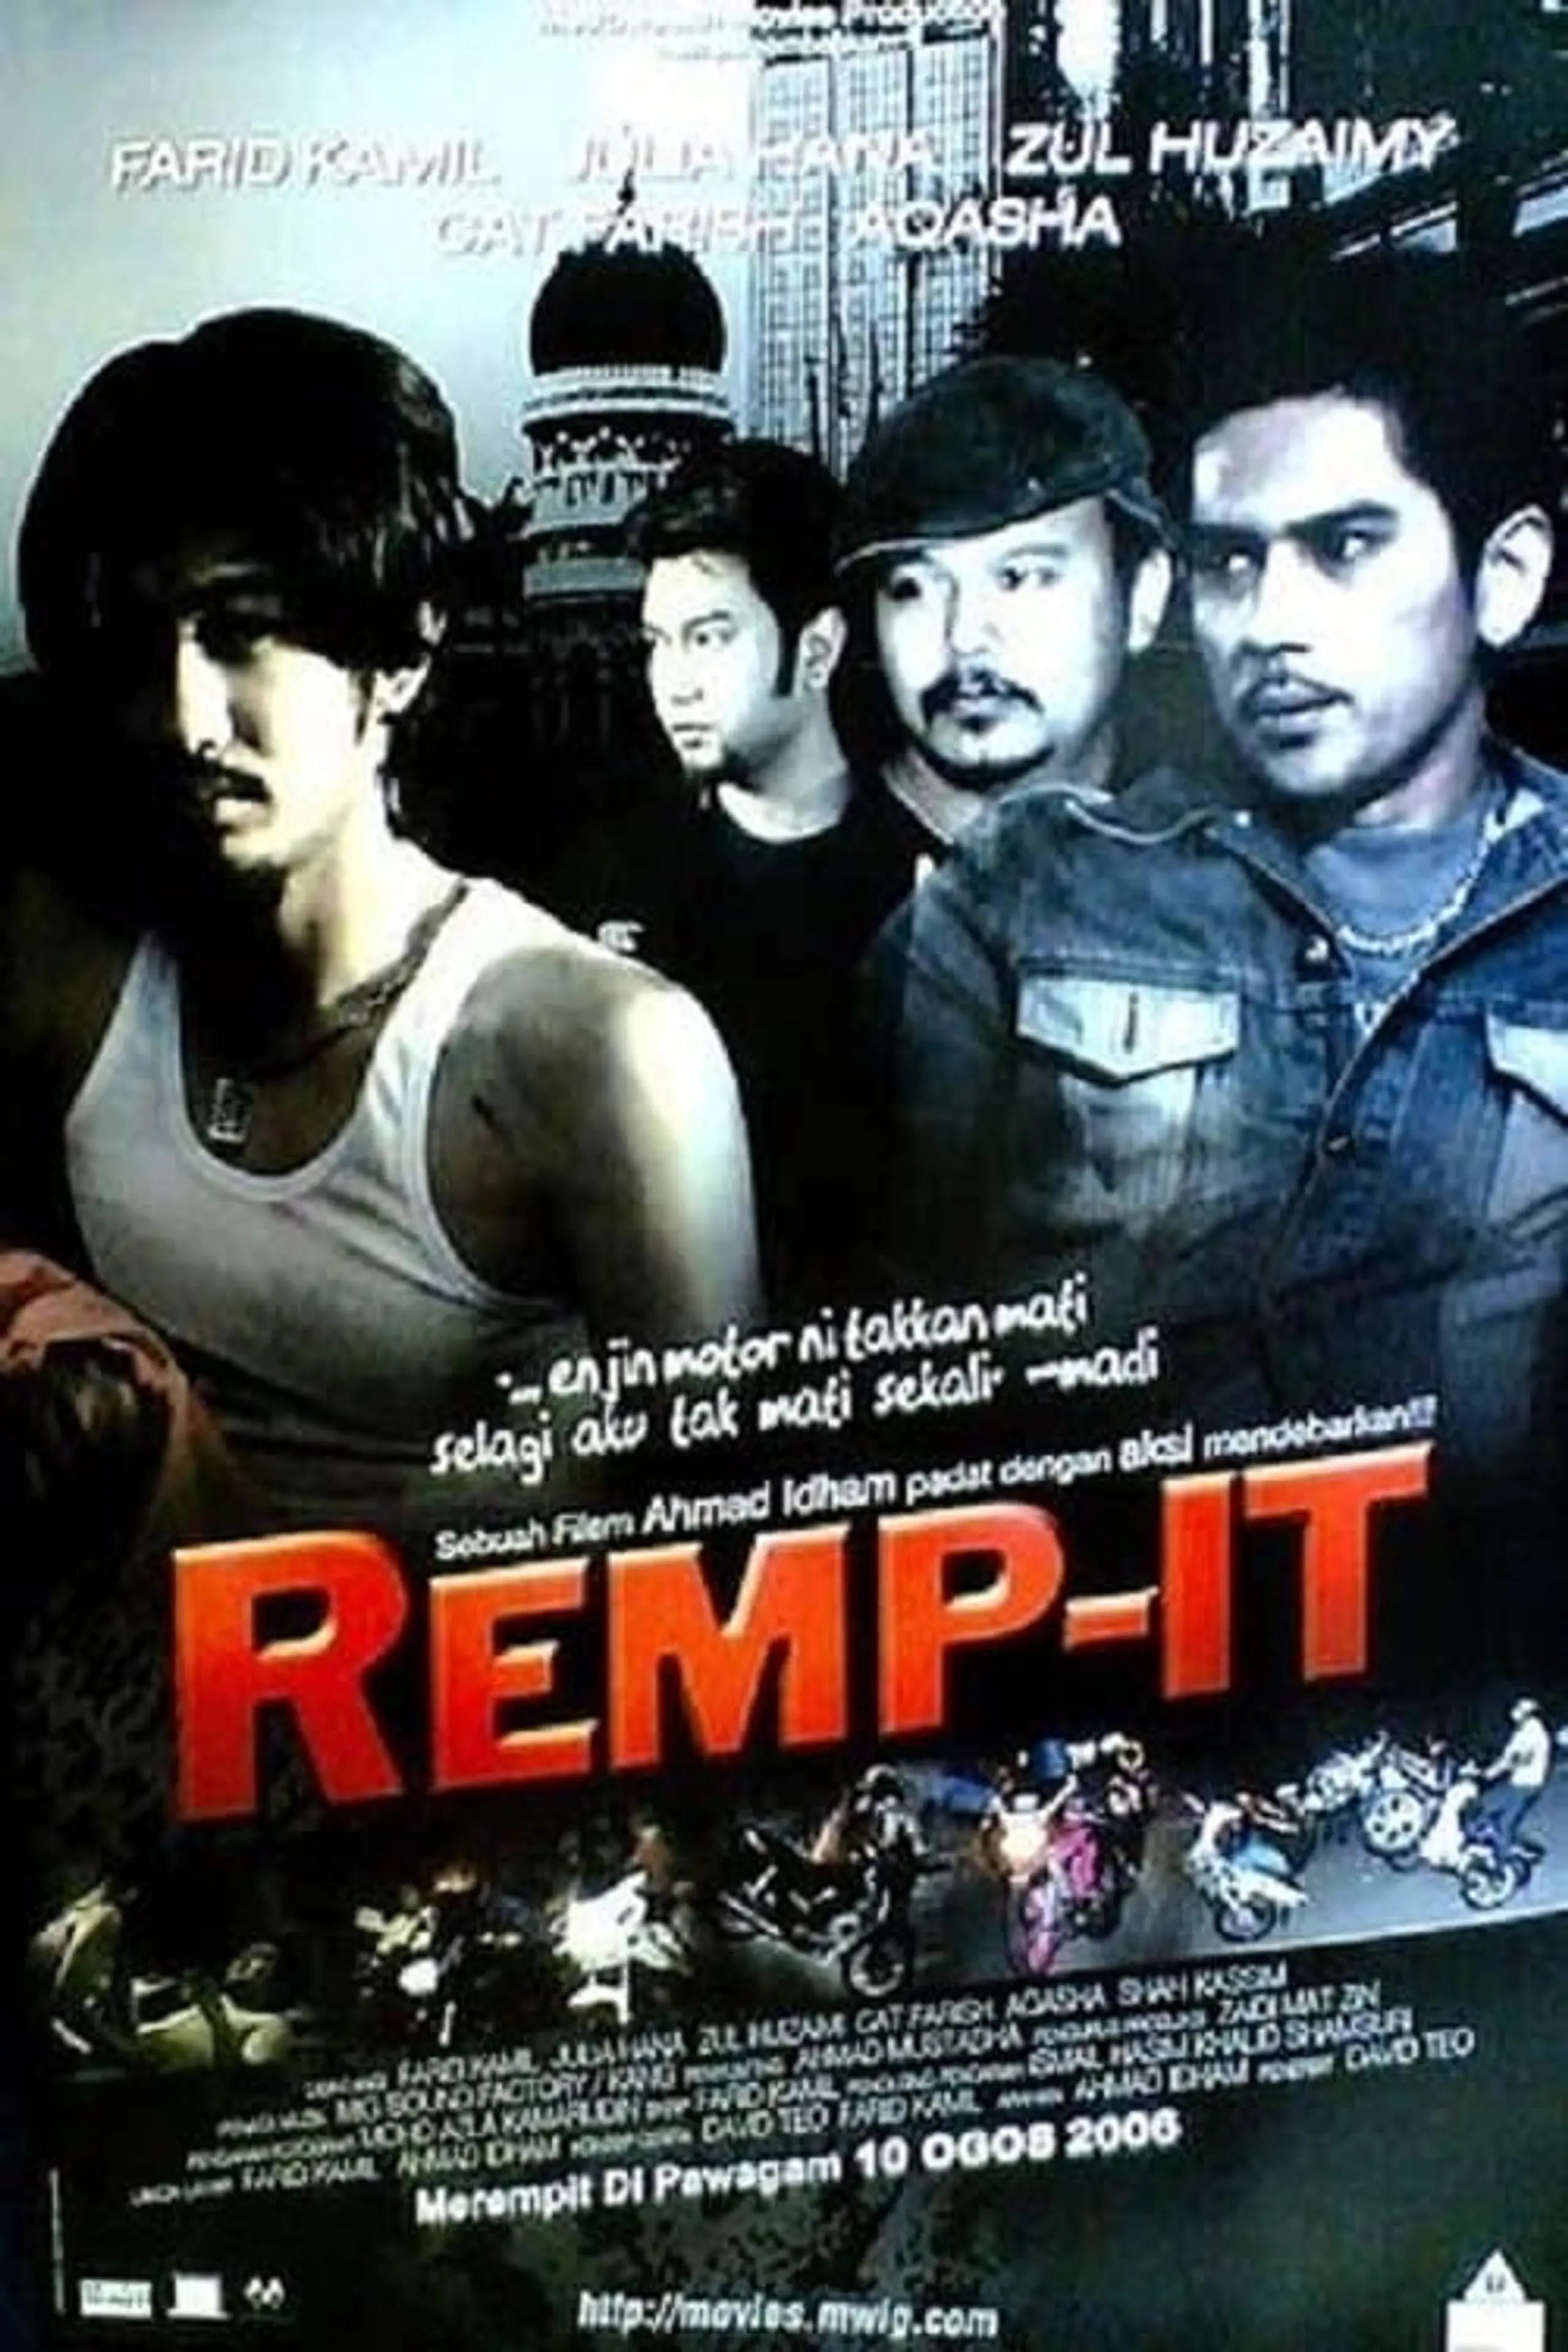 Remp-It